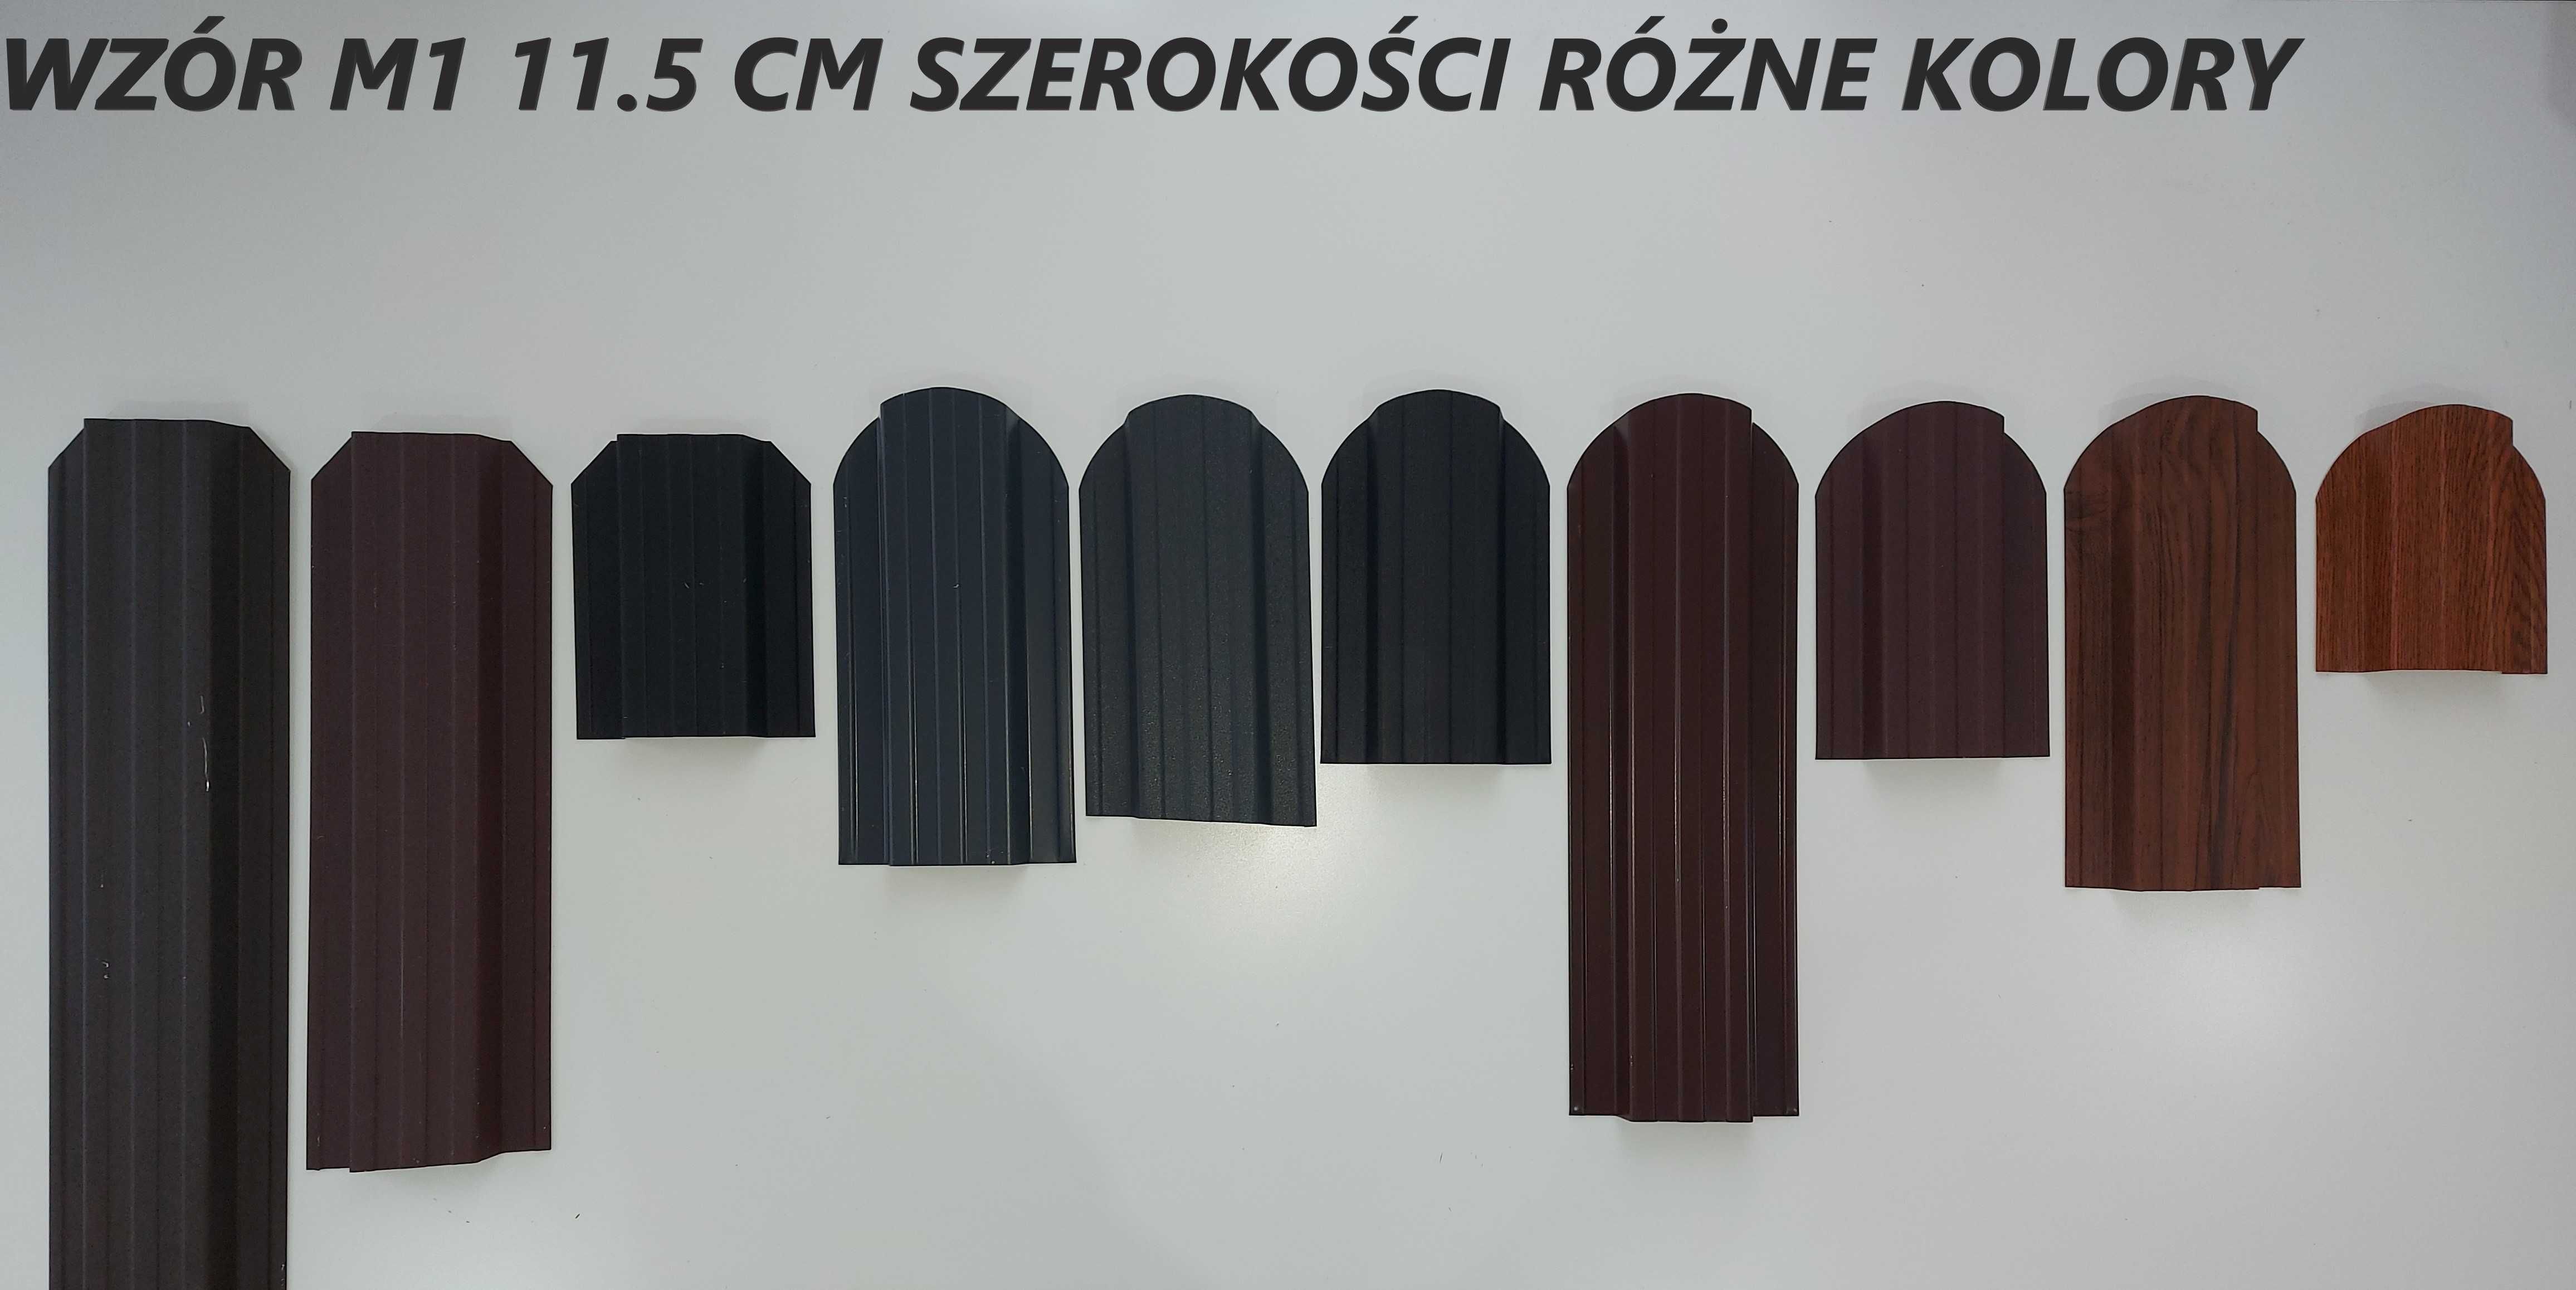 Panel Panele  Metalowe Ogrodzeniowe Sztachetki 17.5cm szer. Producent